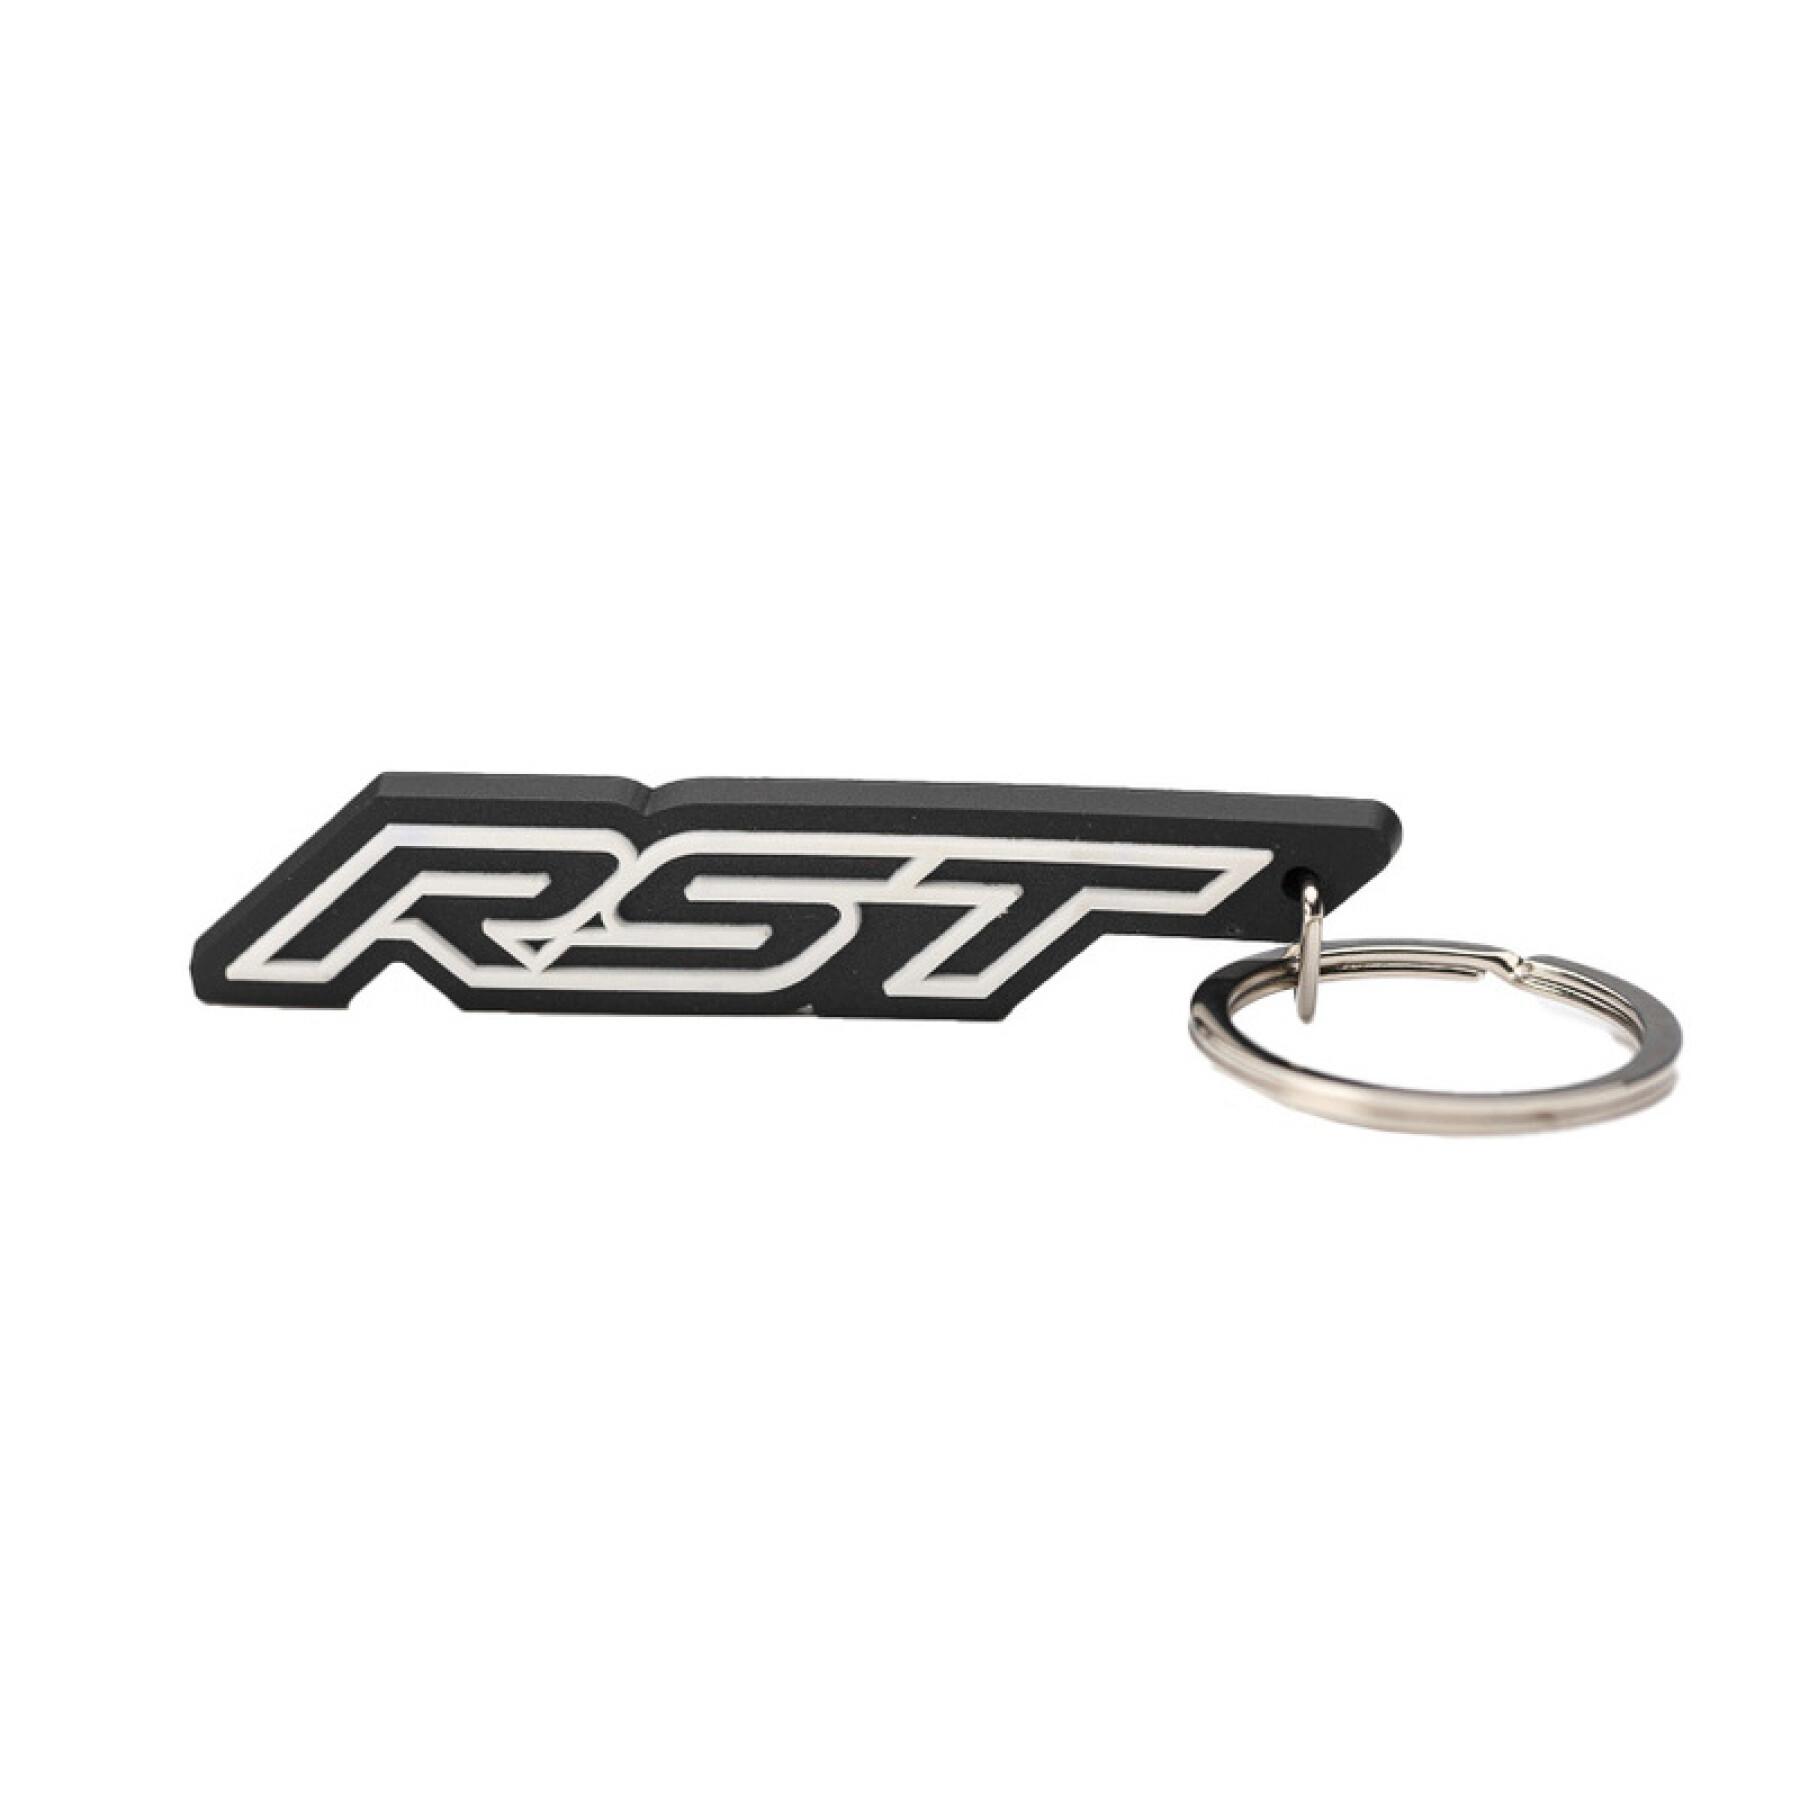 Pack of 100 logo key rings RST